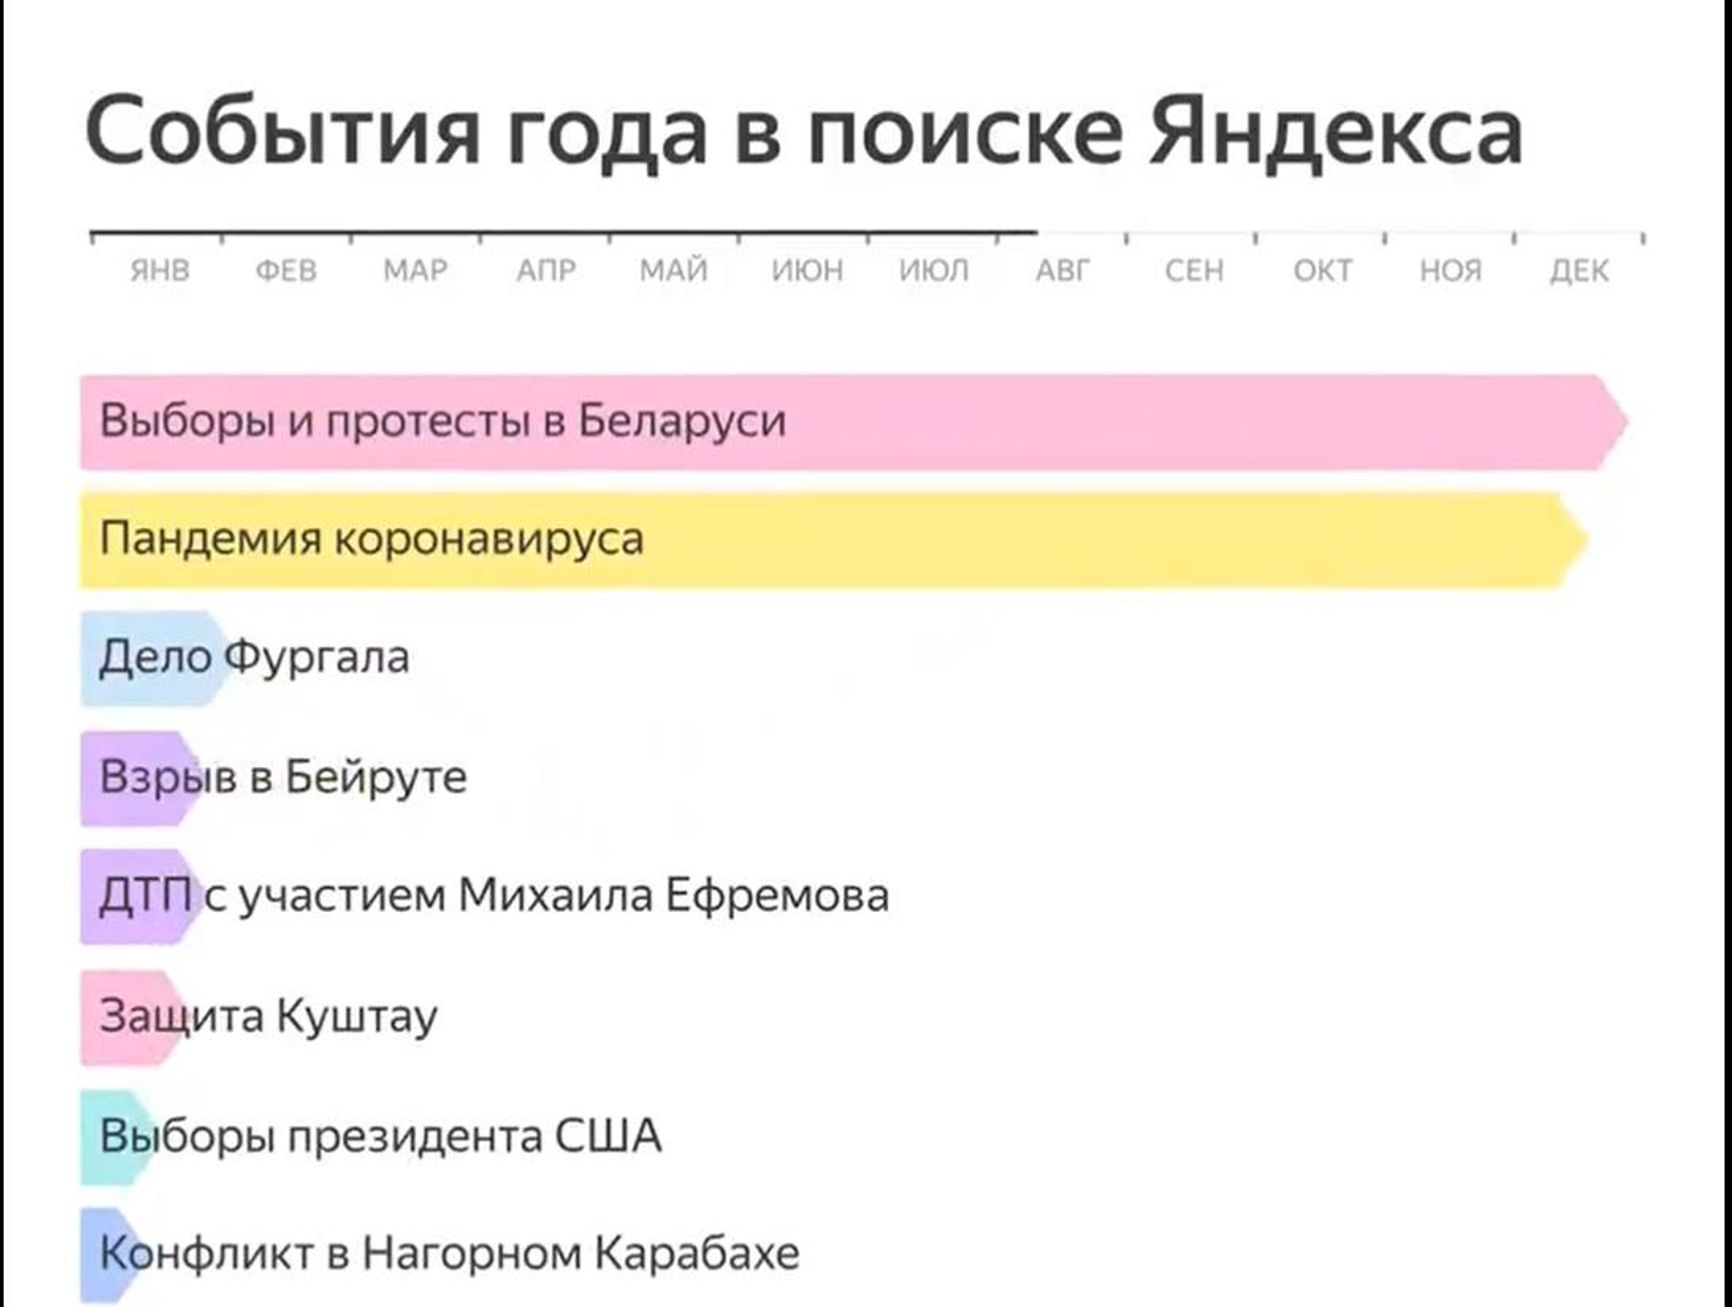 На пике протеста пользователи Яндекса интересовались Беларусью больше чем пандемией коронавируса